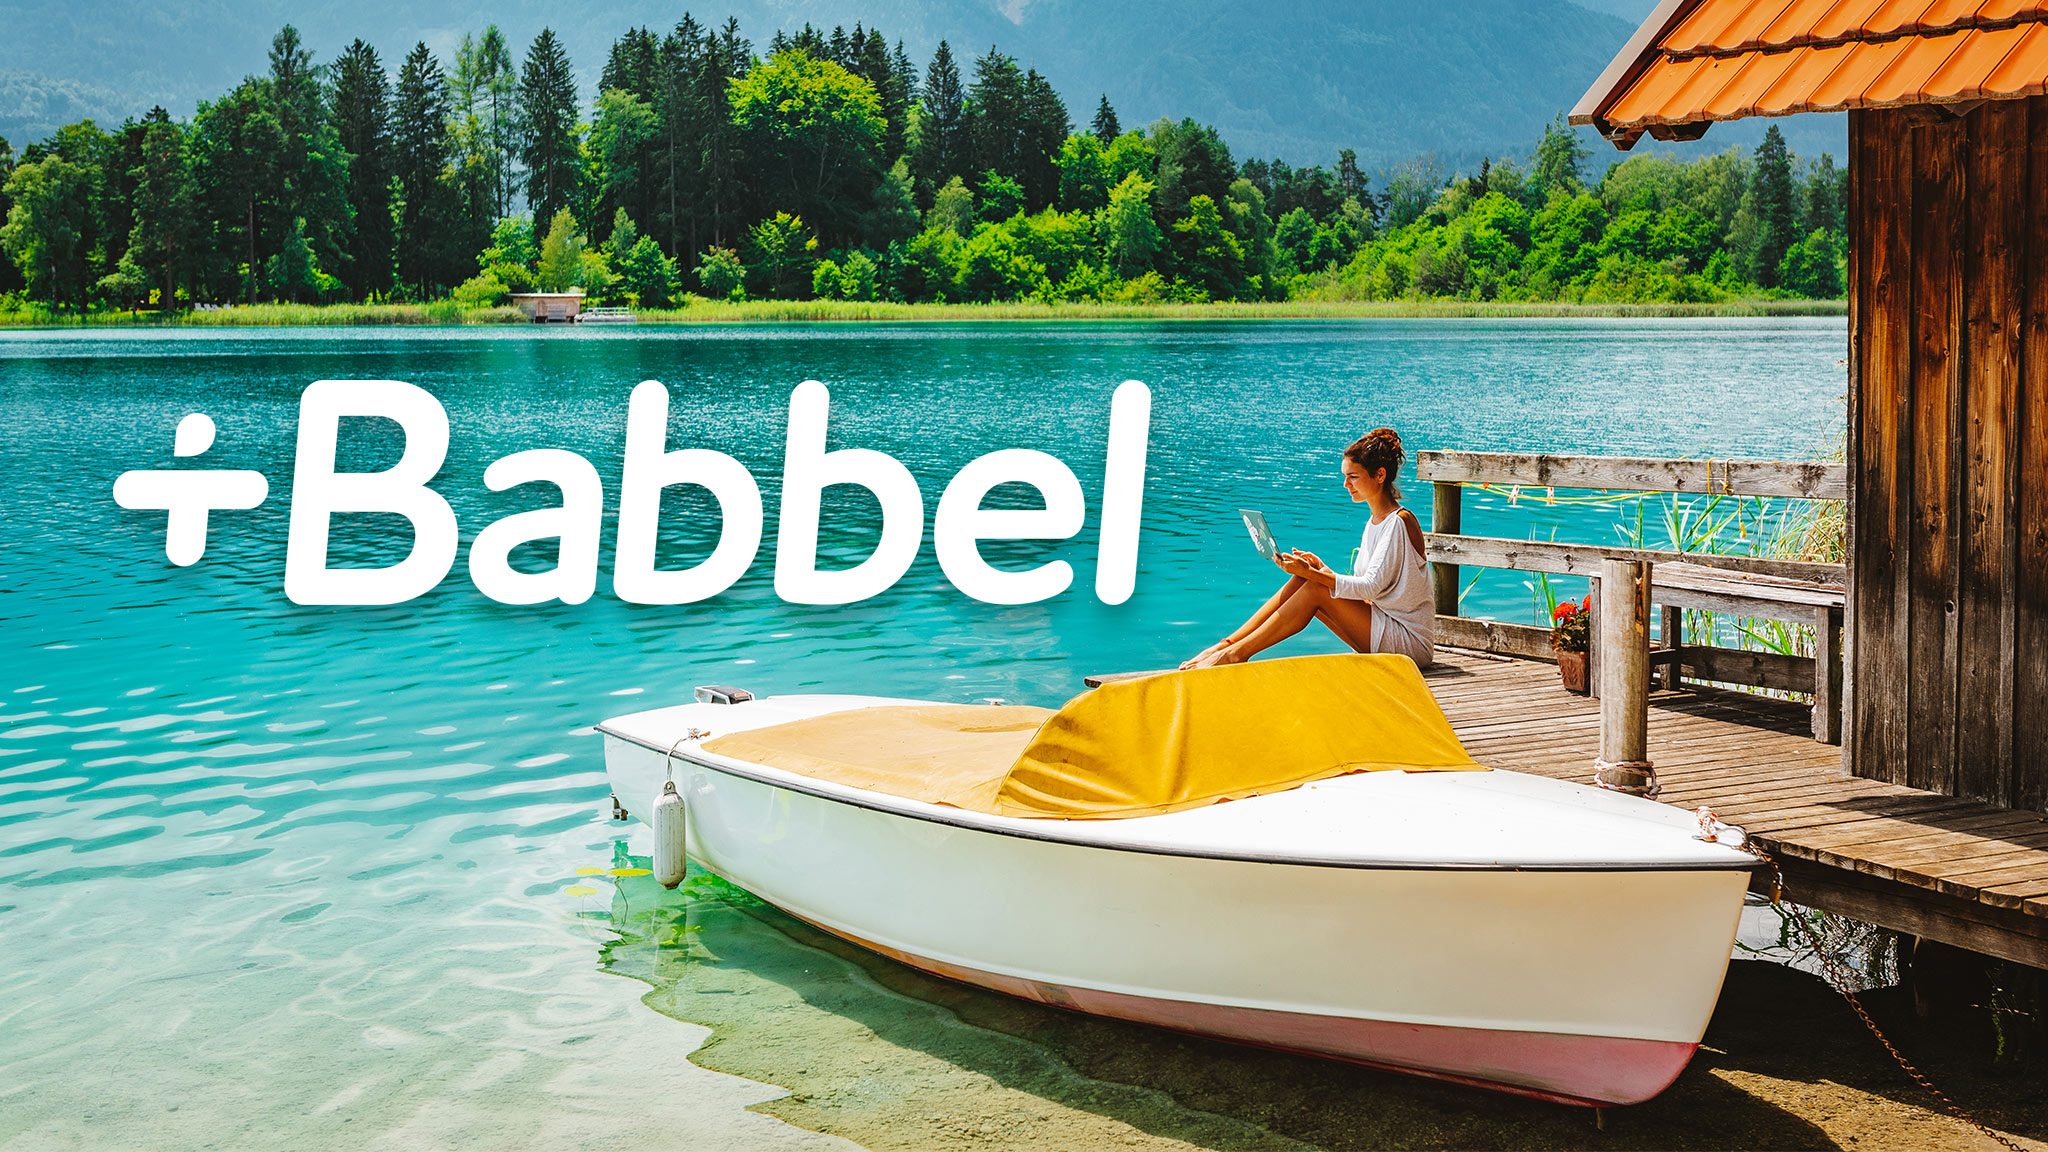 Sommer-Aktion: Babbel-Preise deutlich reduziert